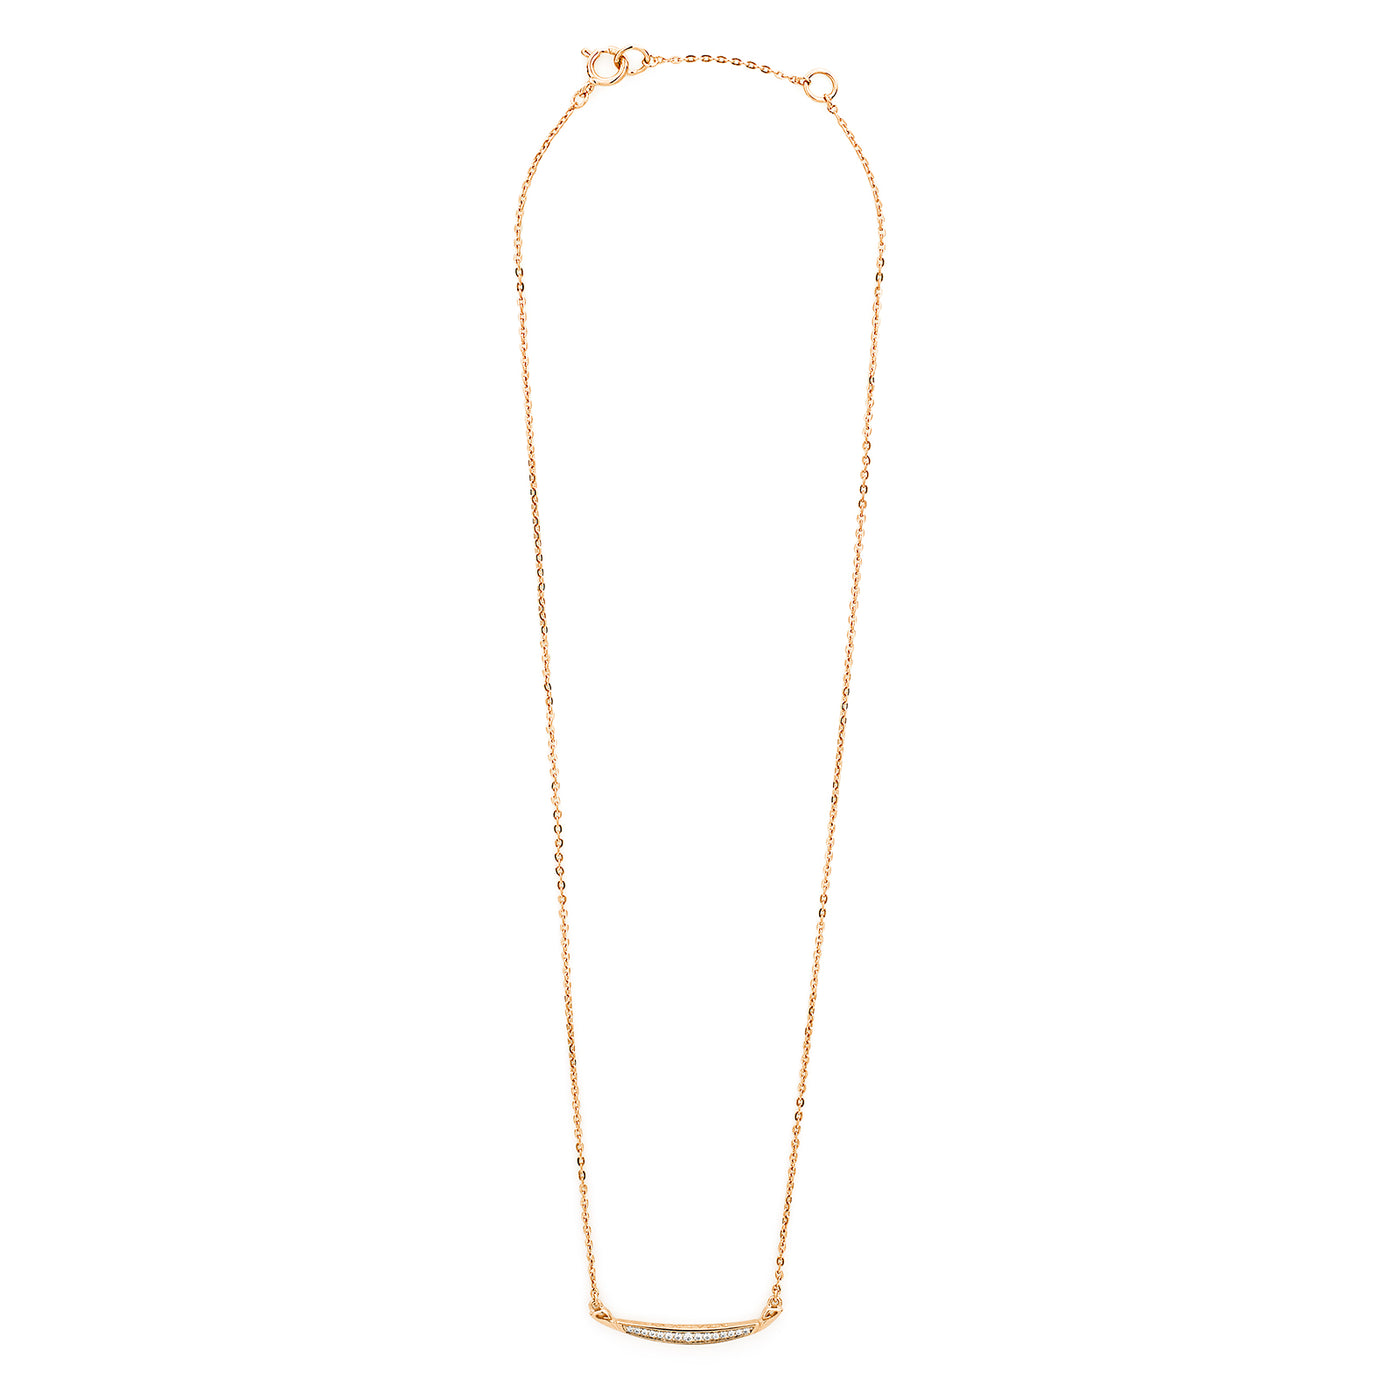 Crescent Pavé Necklace Medium - 18K Rose Gold Vermeil + CZ Blanc